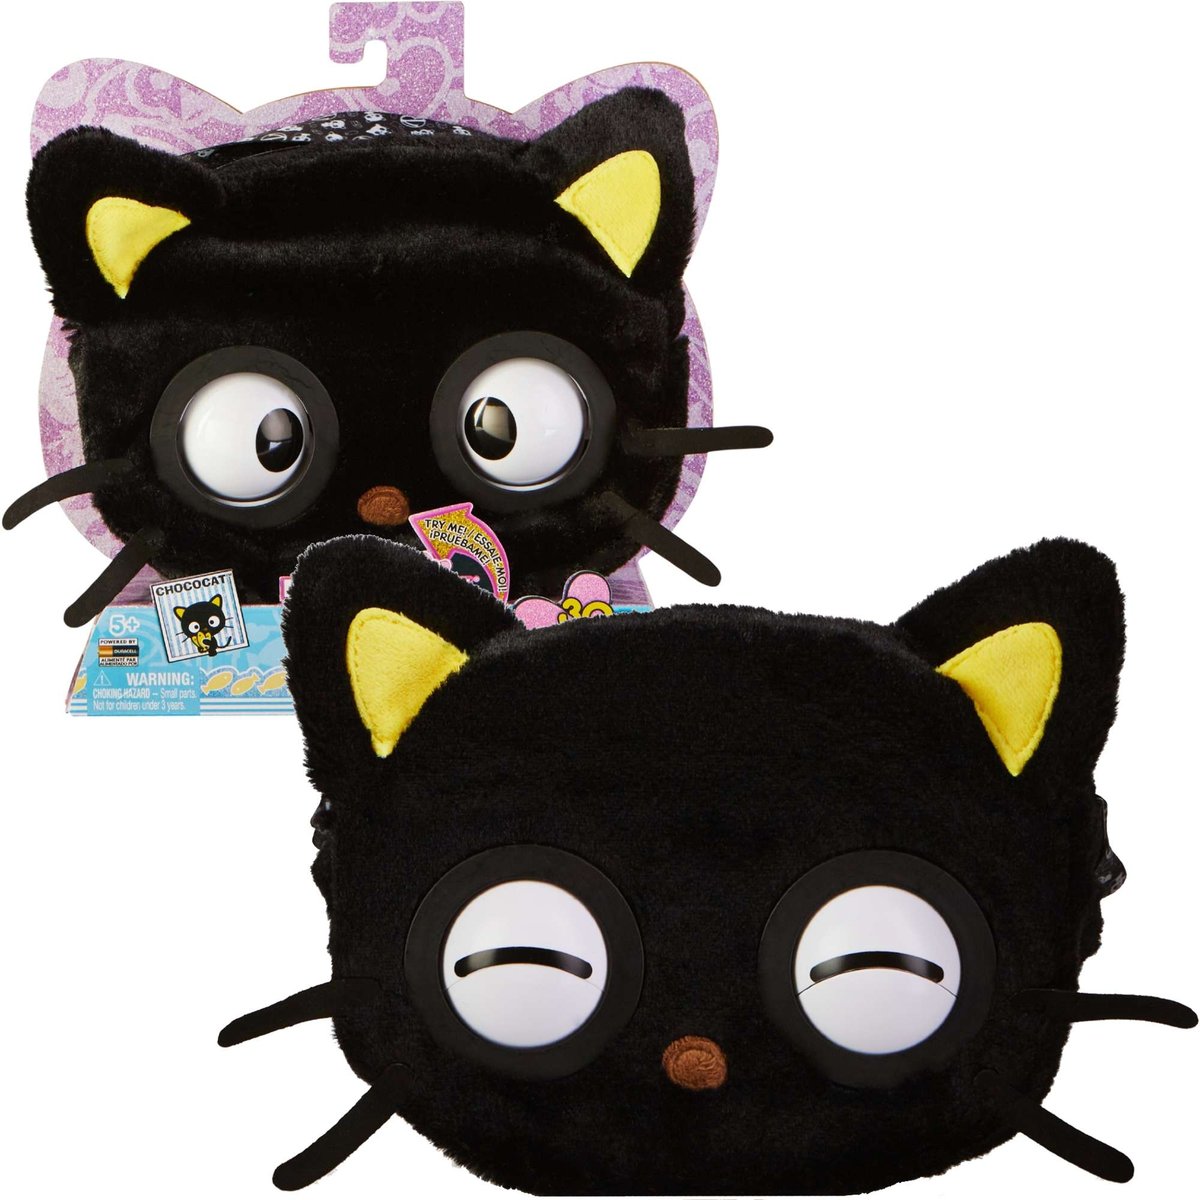 Purse Pets Hello Kitty Chococat interaktywna torebka z oczami i dźwiękami